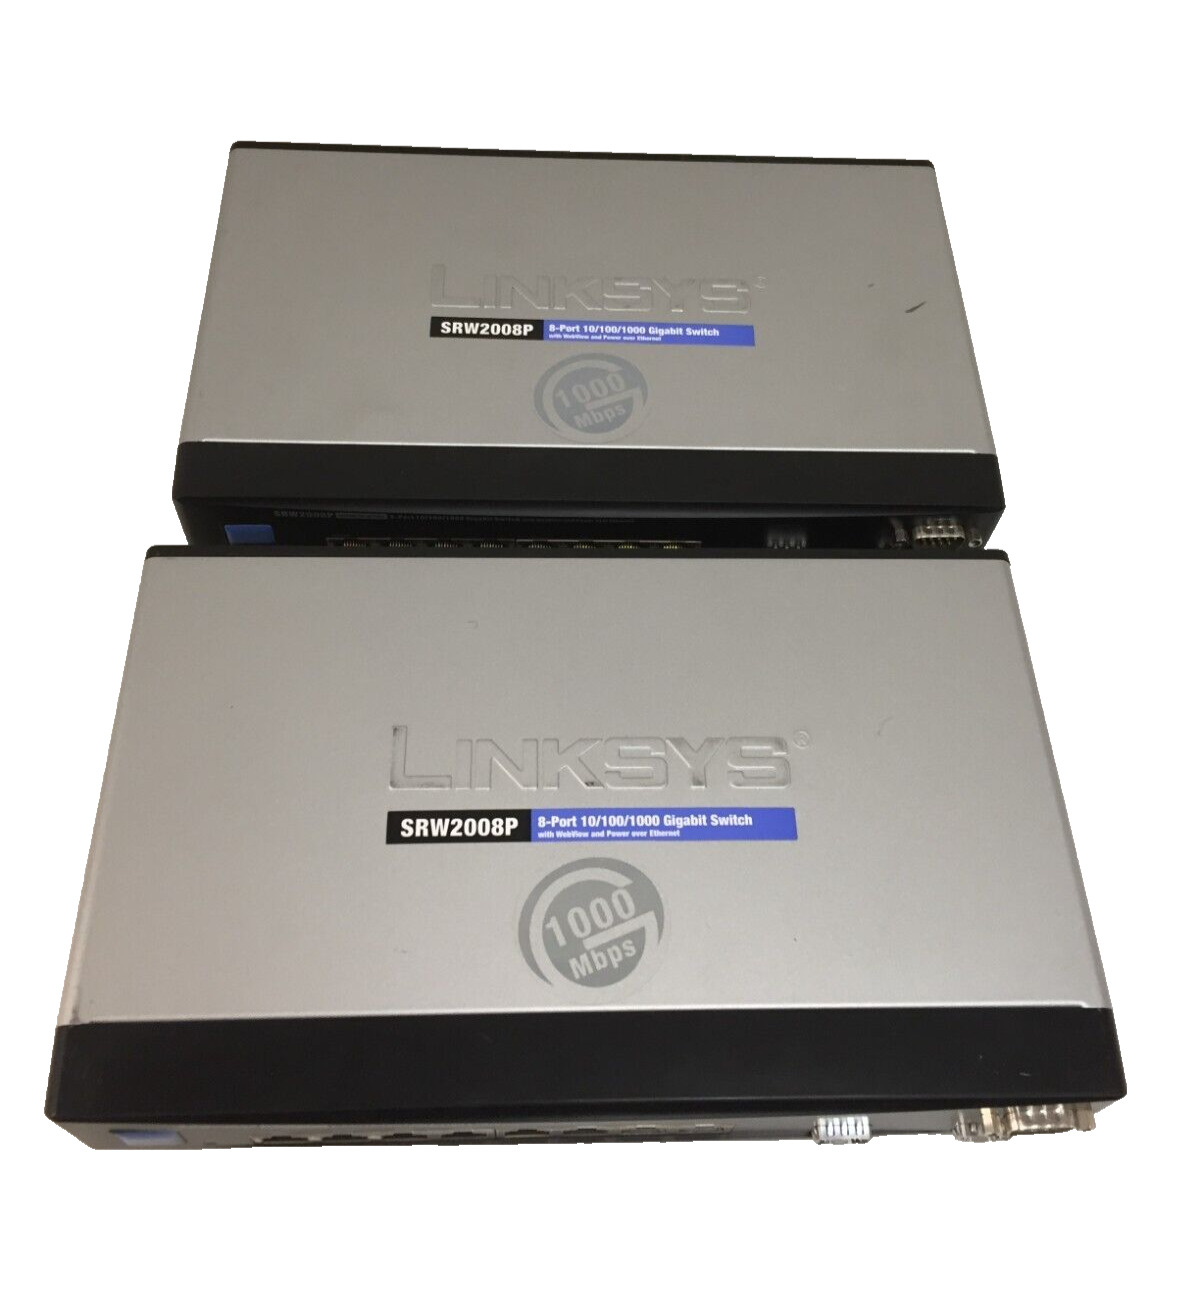 Lot of 2 Linksys SRW2008P 8-port 10/100/1000 Gigabit Switch w/ WebView PoE No AC